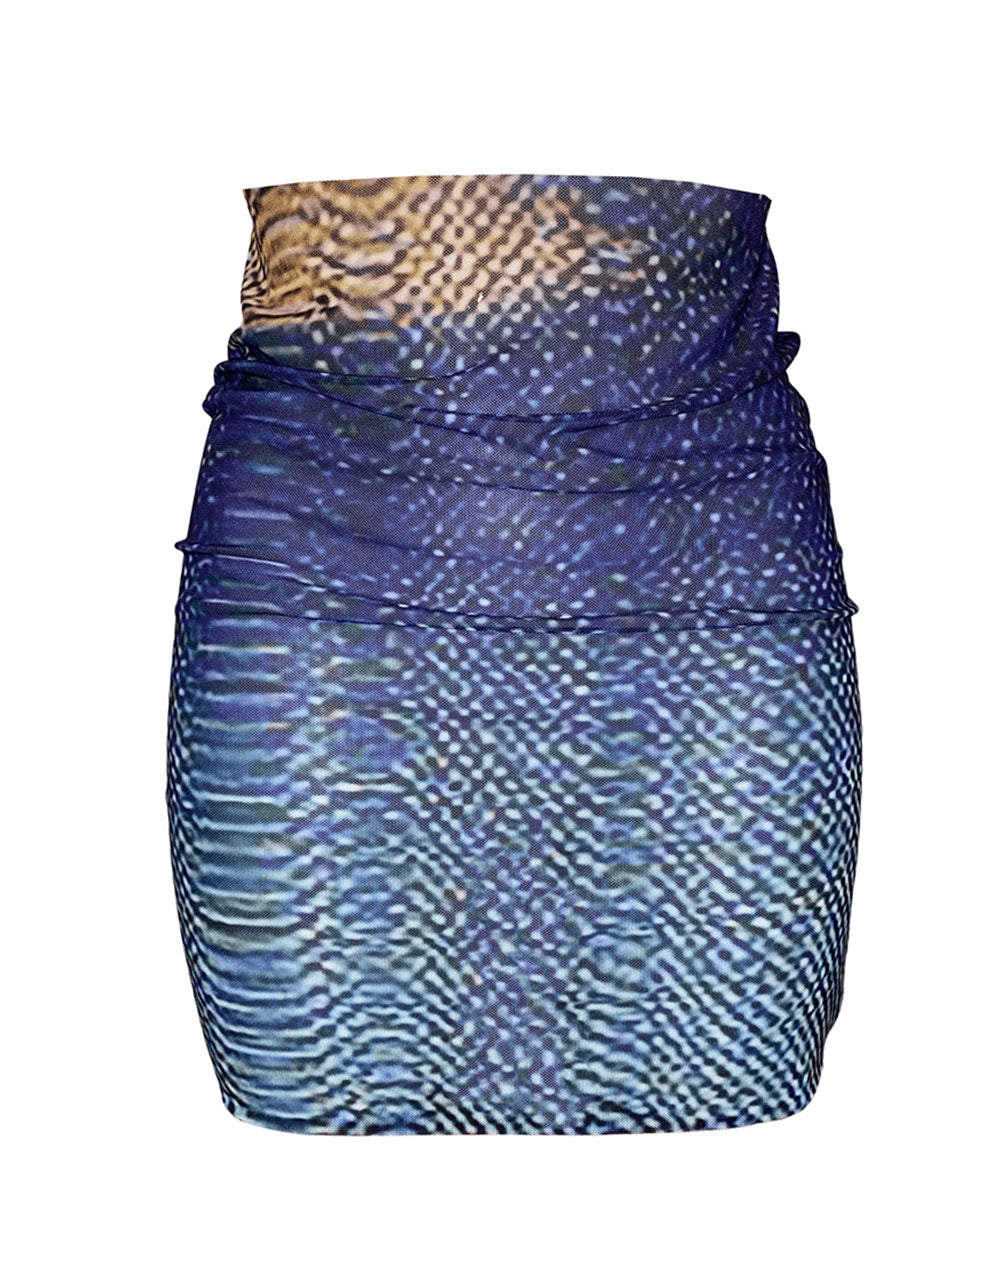 Print Skirt